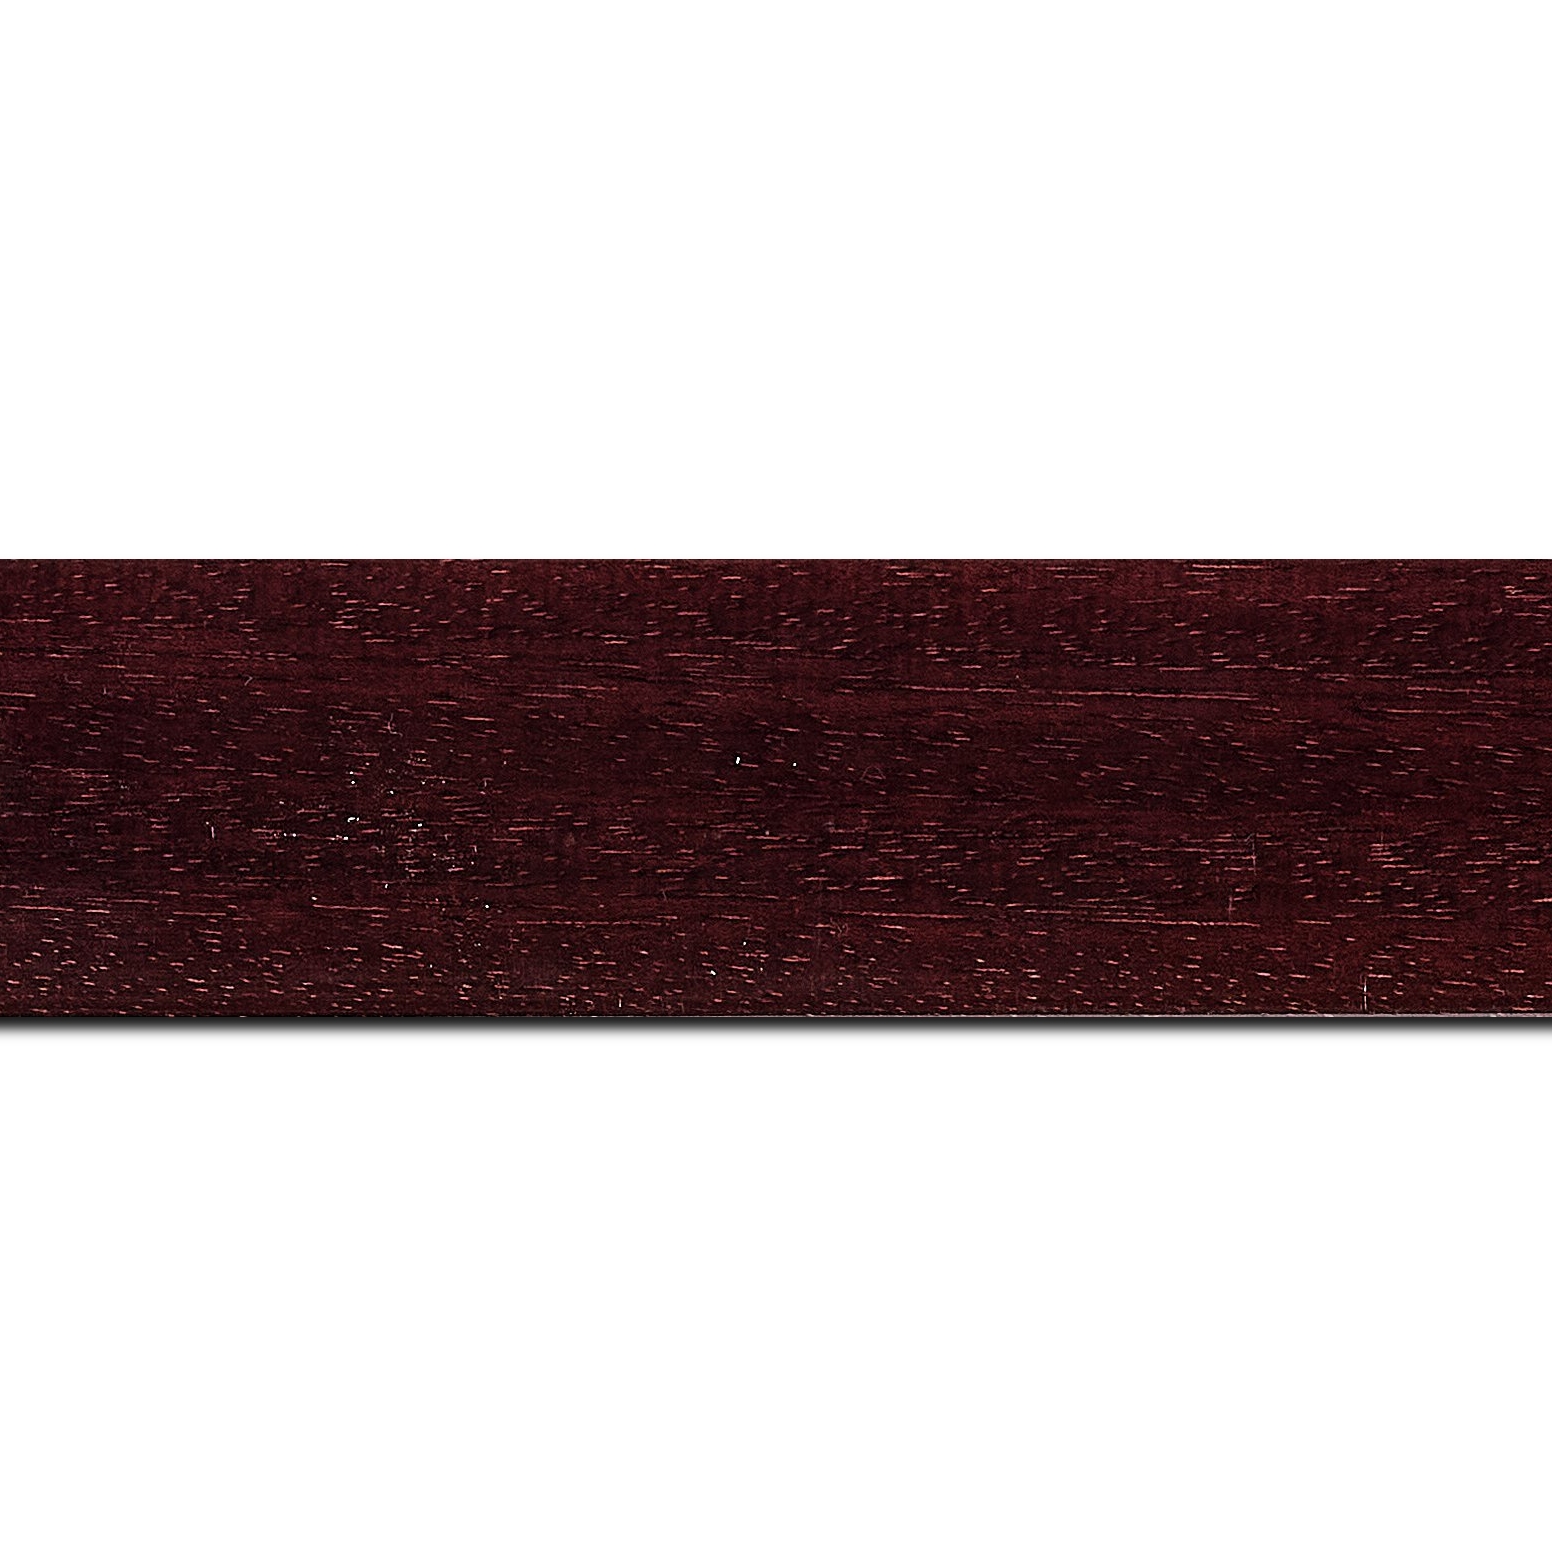 Pack par 12m, bois profil plat largeur 4.9cm de couleur bordeaux vernis brillant(longueur baguette pouvant varier entre 2.40m et 3m selon arrivage des bois)